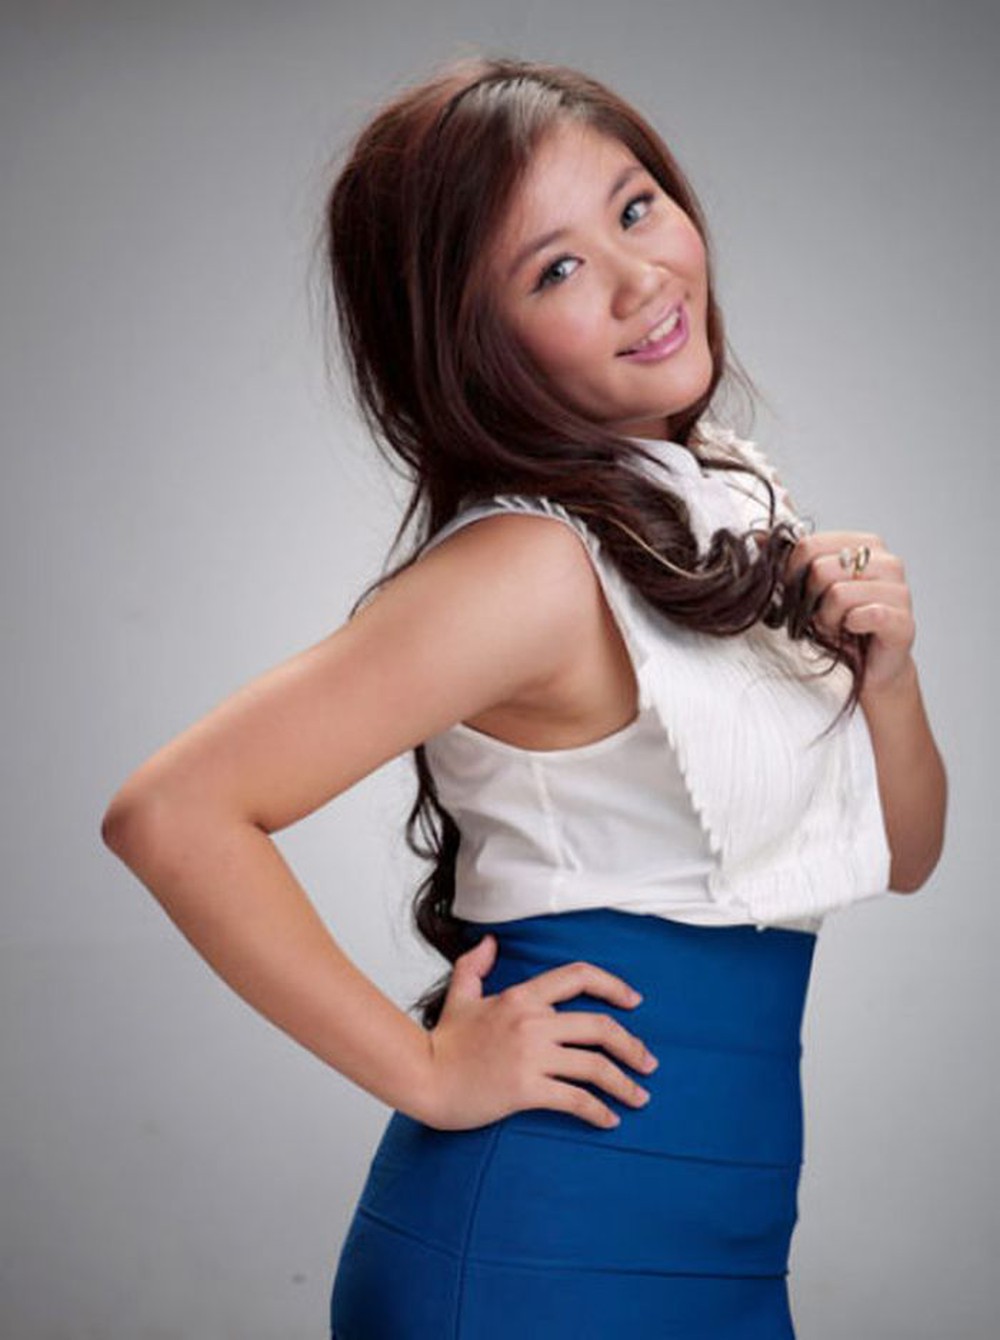 Văn Mai Hương - Á quân Vietnam Idol sau 12 năm: Xinh đẹp, thành công, sở hữu loạt hit bự - Ảnh 1.